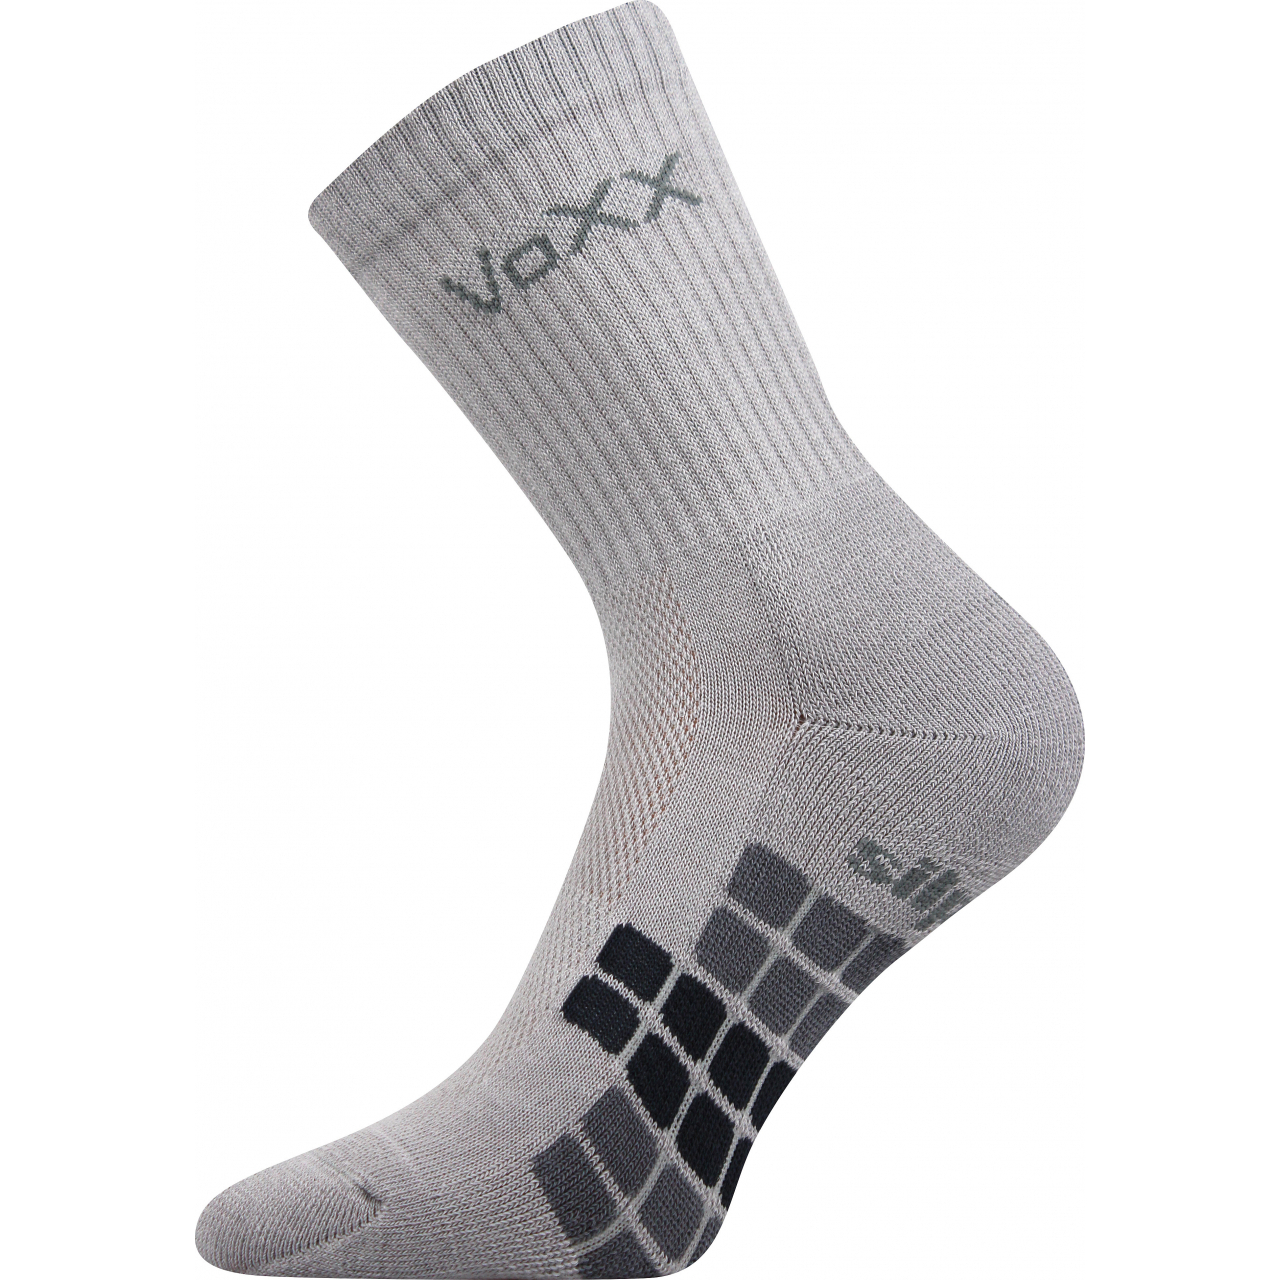 Ponožky unisex sportovní Voxx Raptor - světle šedé, 43-46